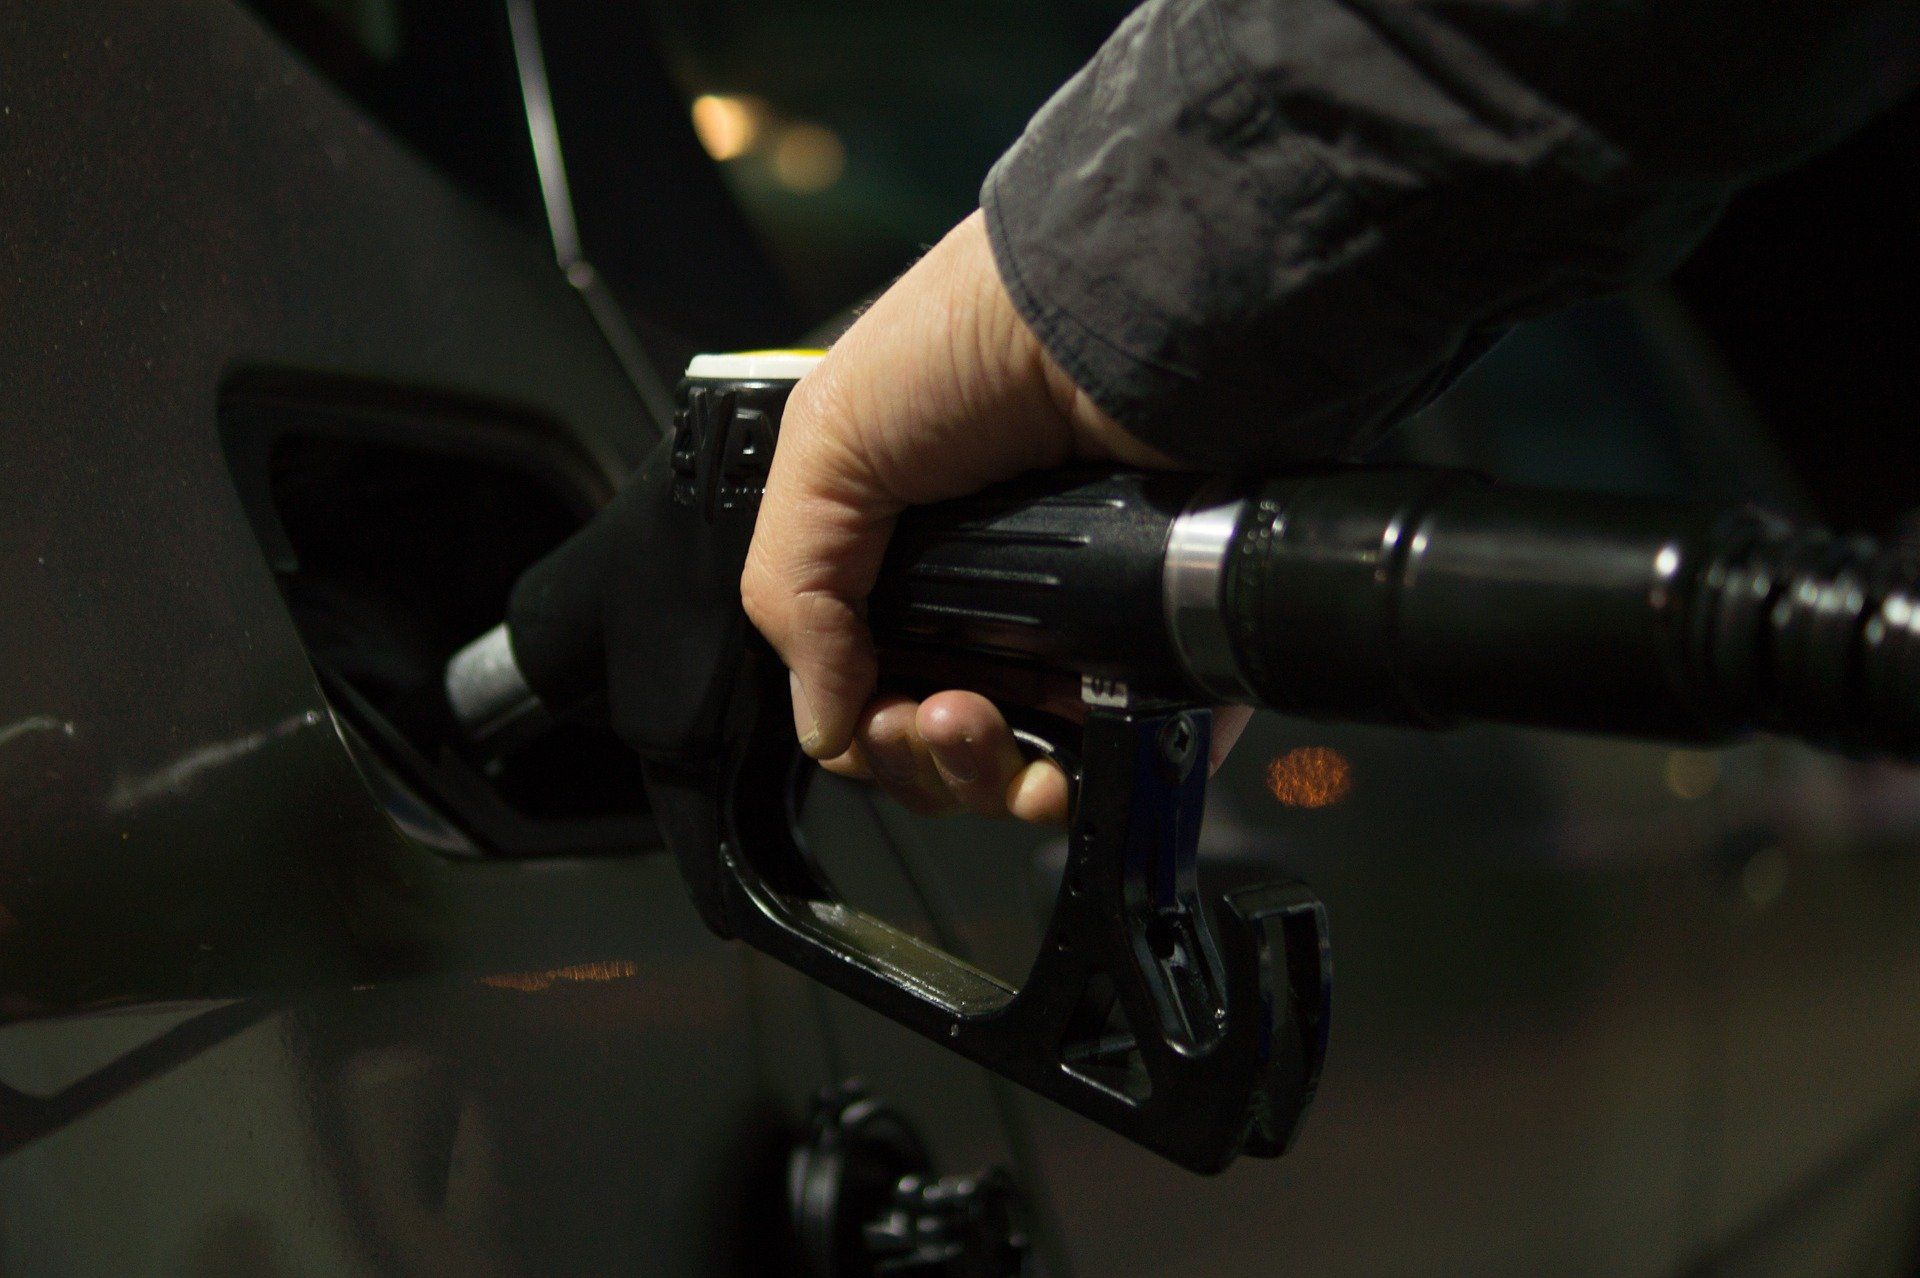 Fuel price August 1, 2022: Petrol Rs 106.31, diesel Rs 94.27 in Mumbai